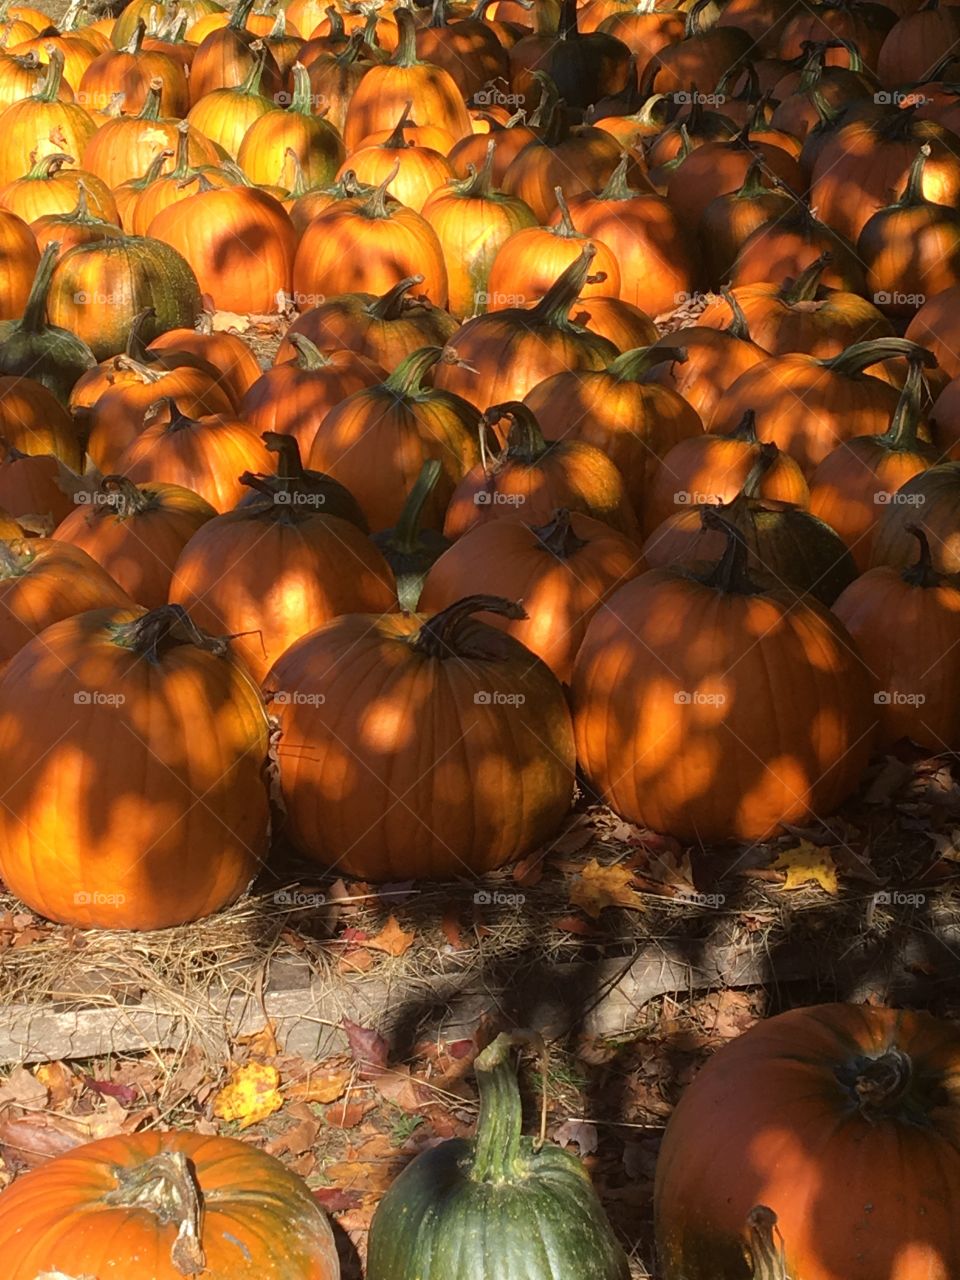 Sunlight on pumpkins